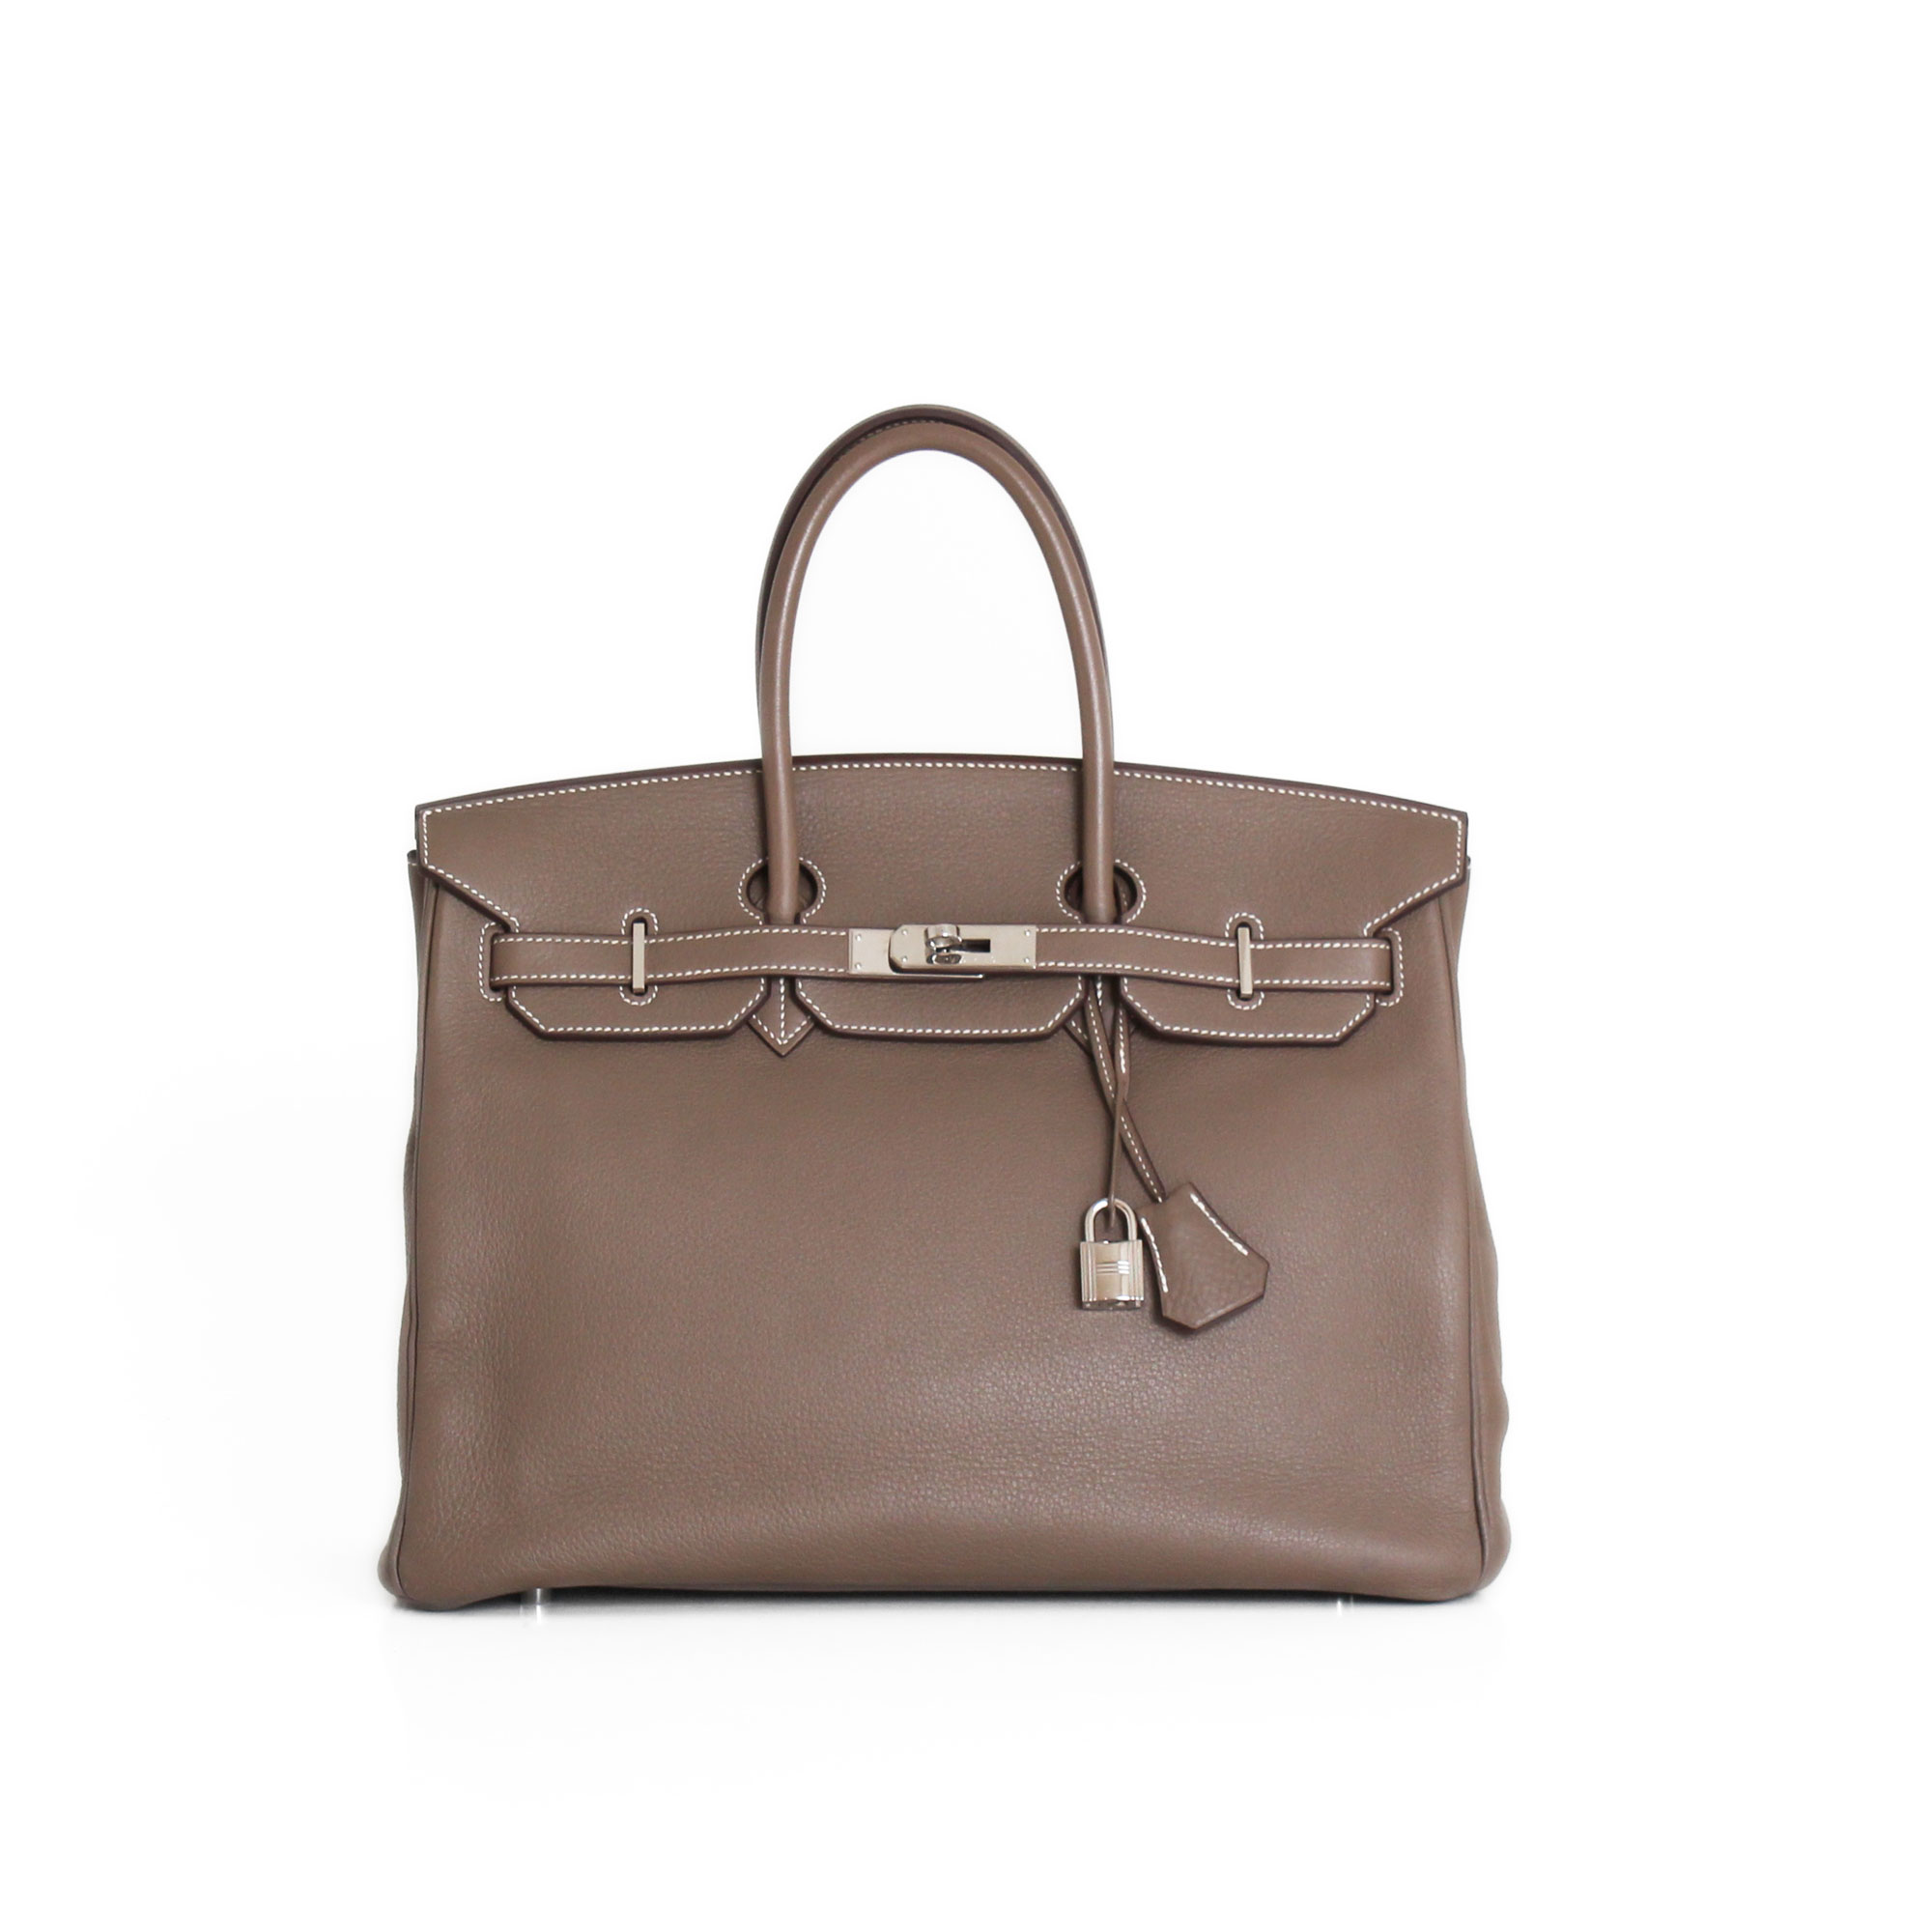 Sell luxury bags | Hermes Birkin 35 